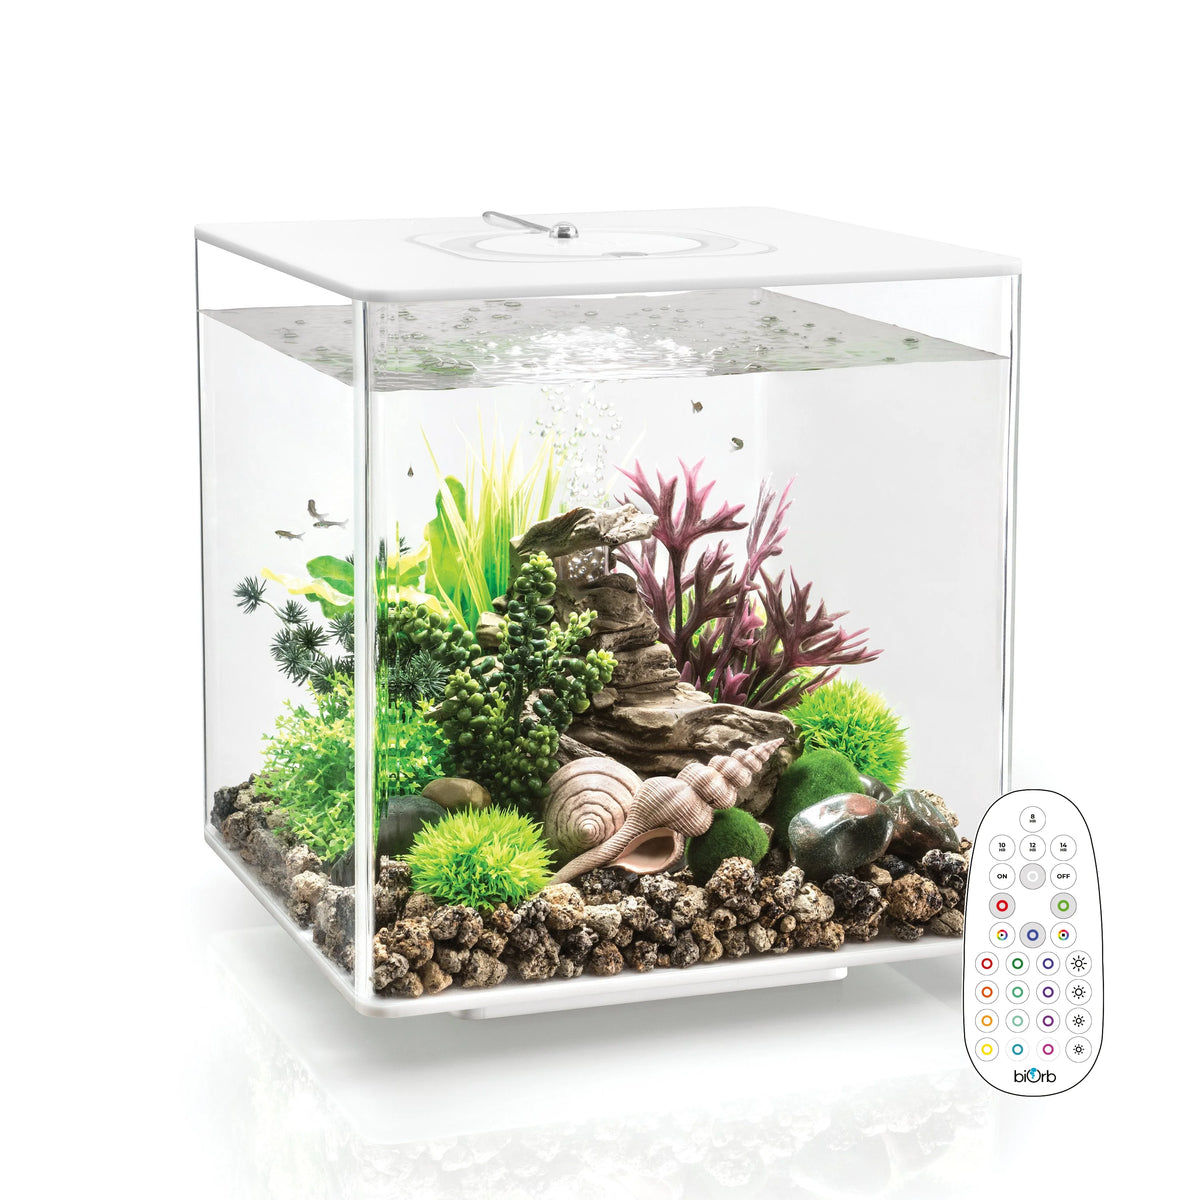 Ciano Filtration Pack S 3 months Aquarium Line - Aquarium Store